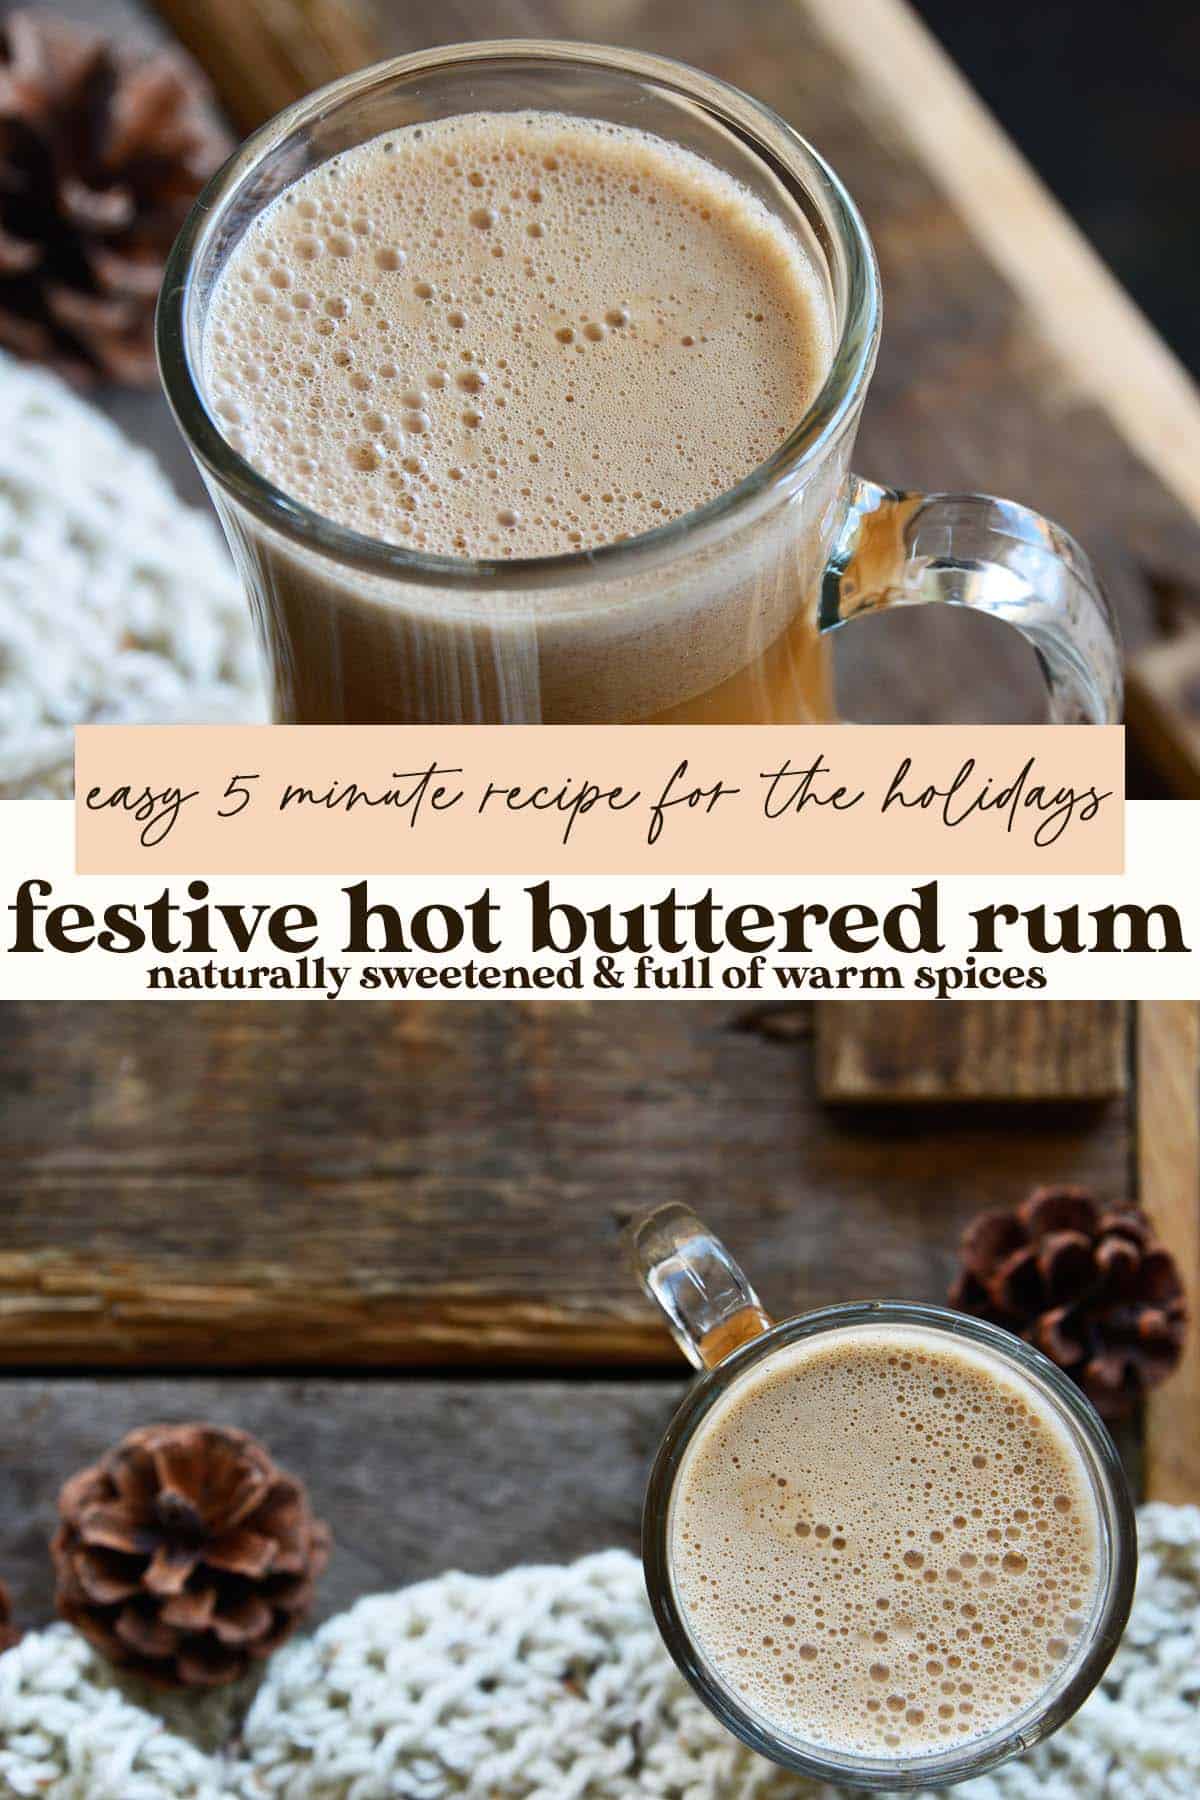 hot buttered rum recipe pin